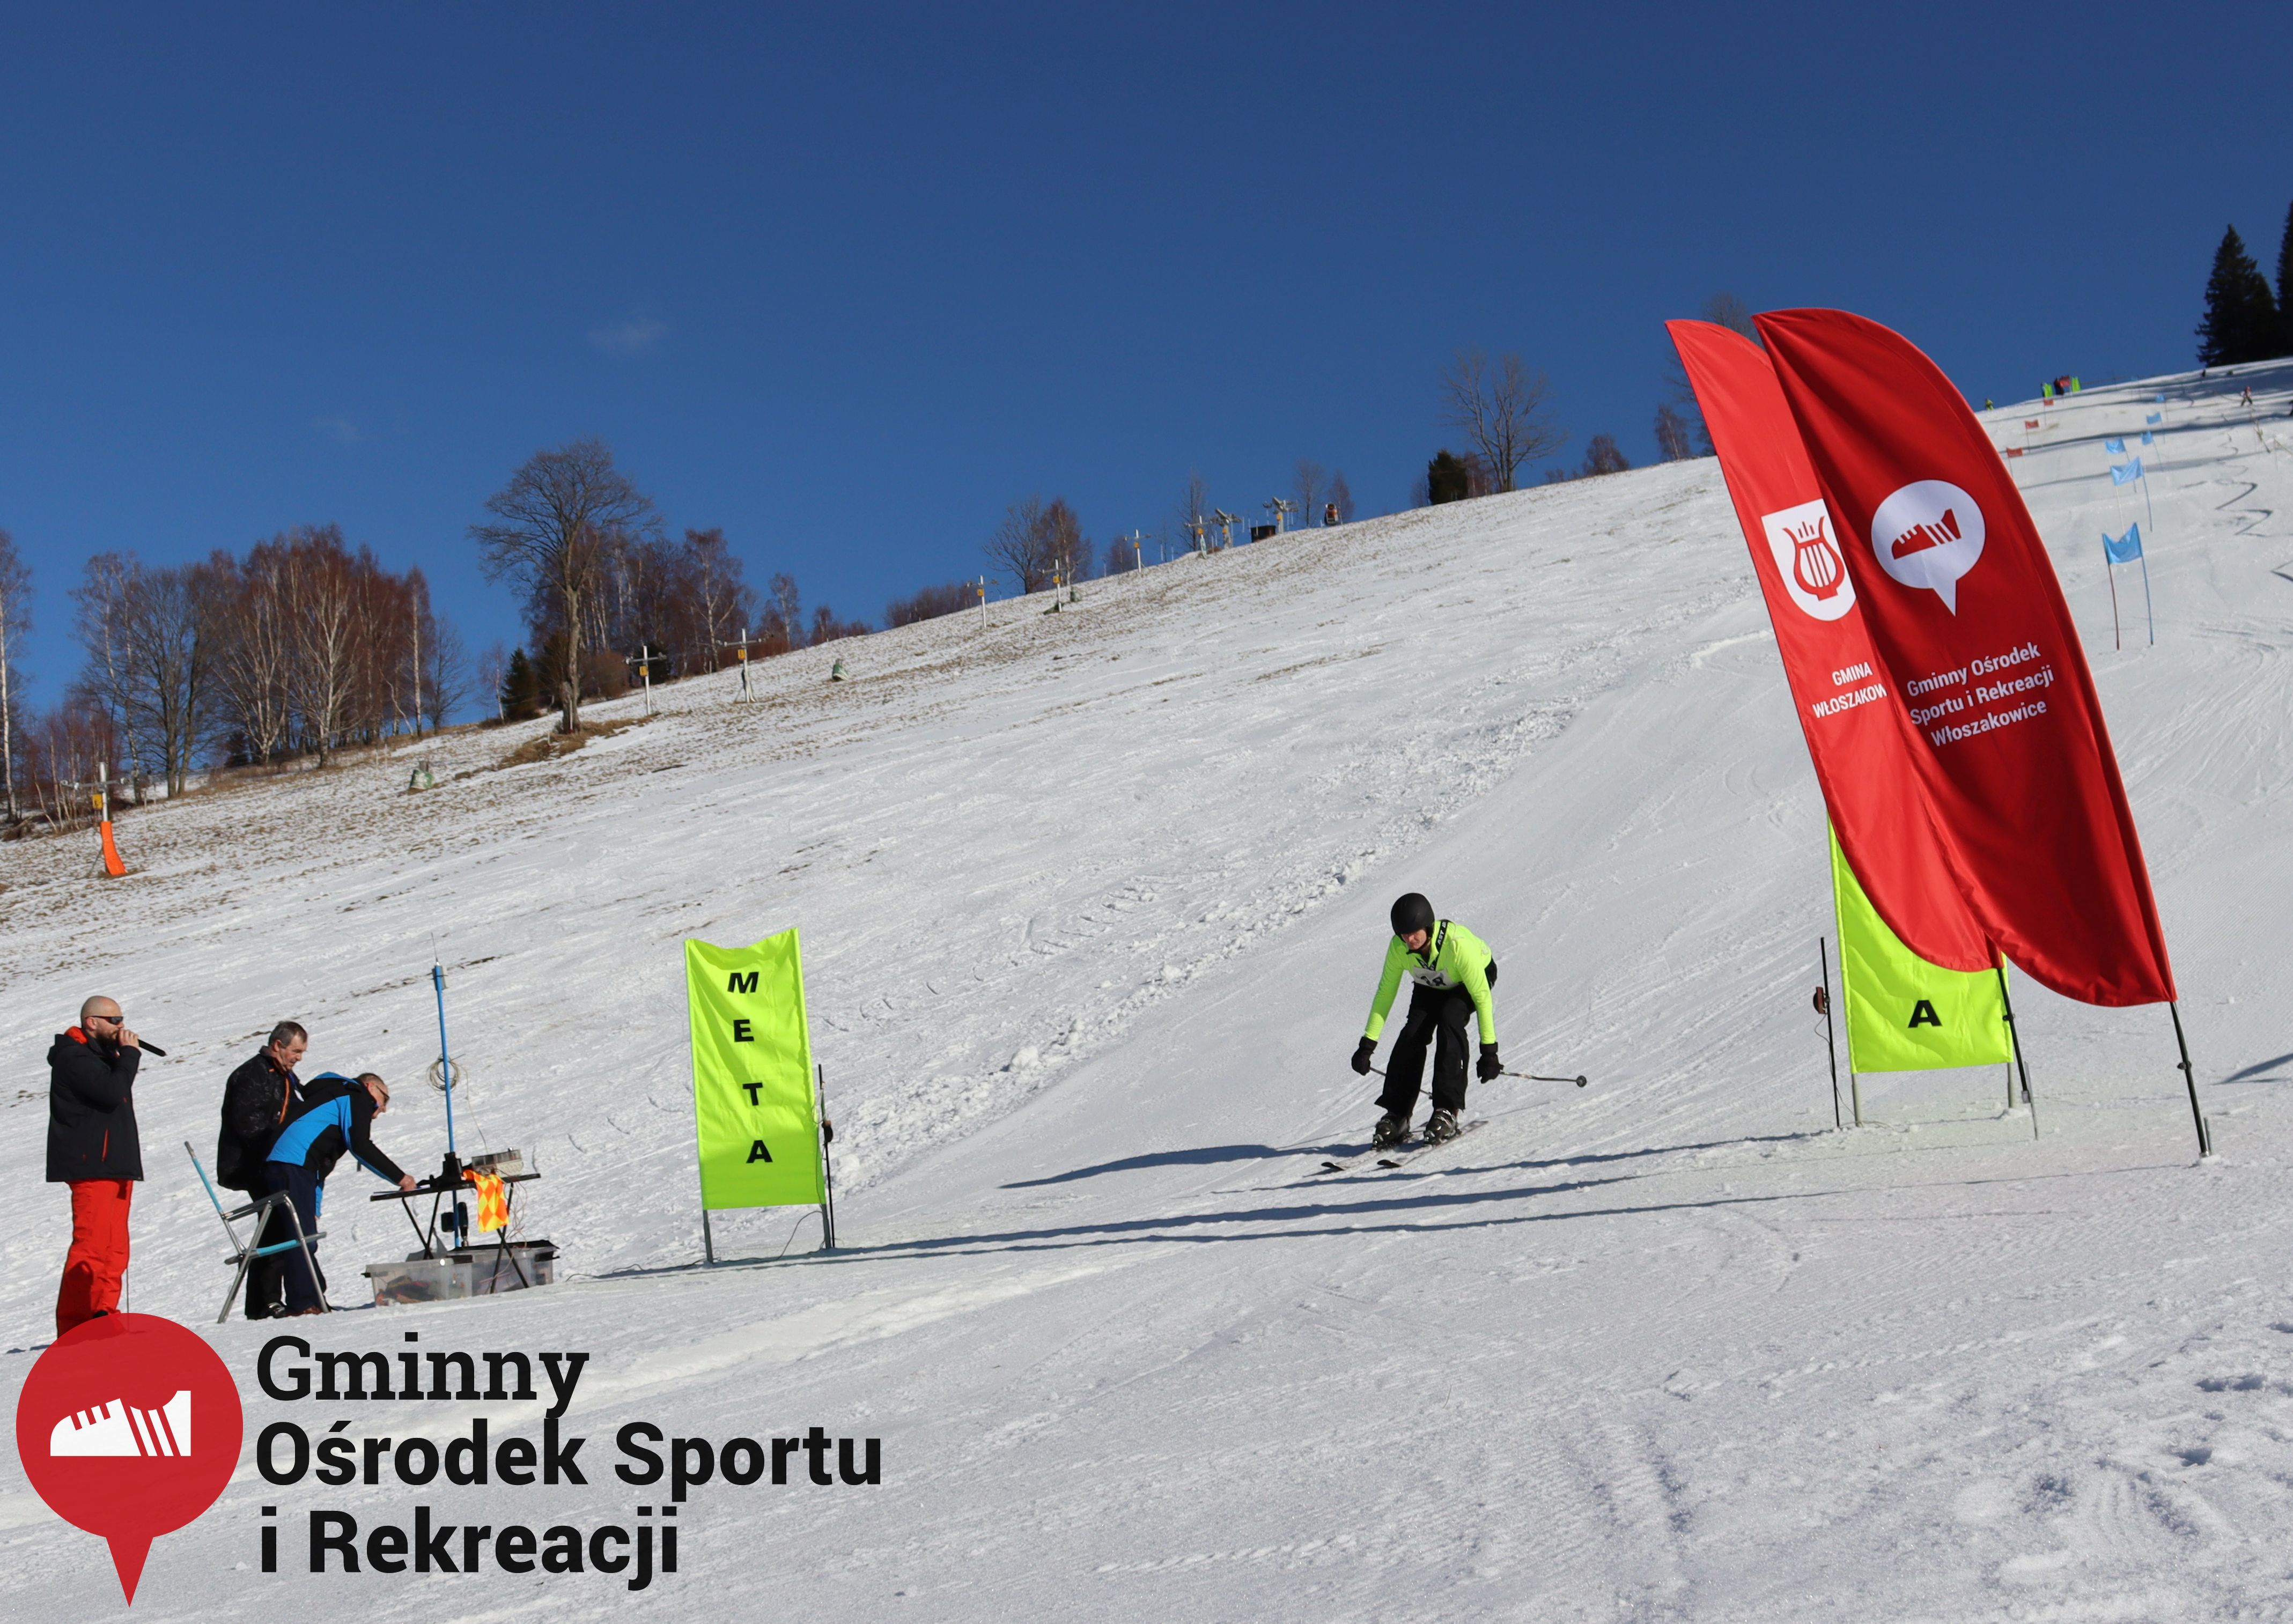 2022.02.12 - 18. Mistrzostwa Gminy Woszakowice w narciarstwie095.jpg - 1,29 MB